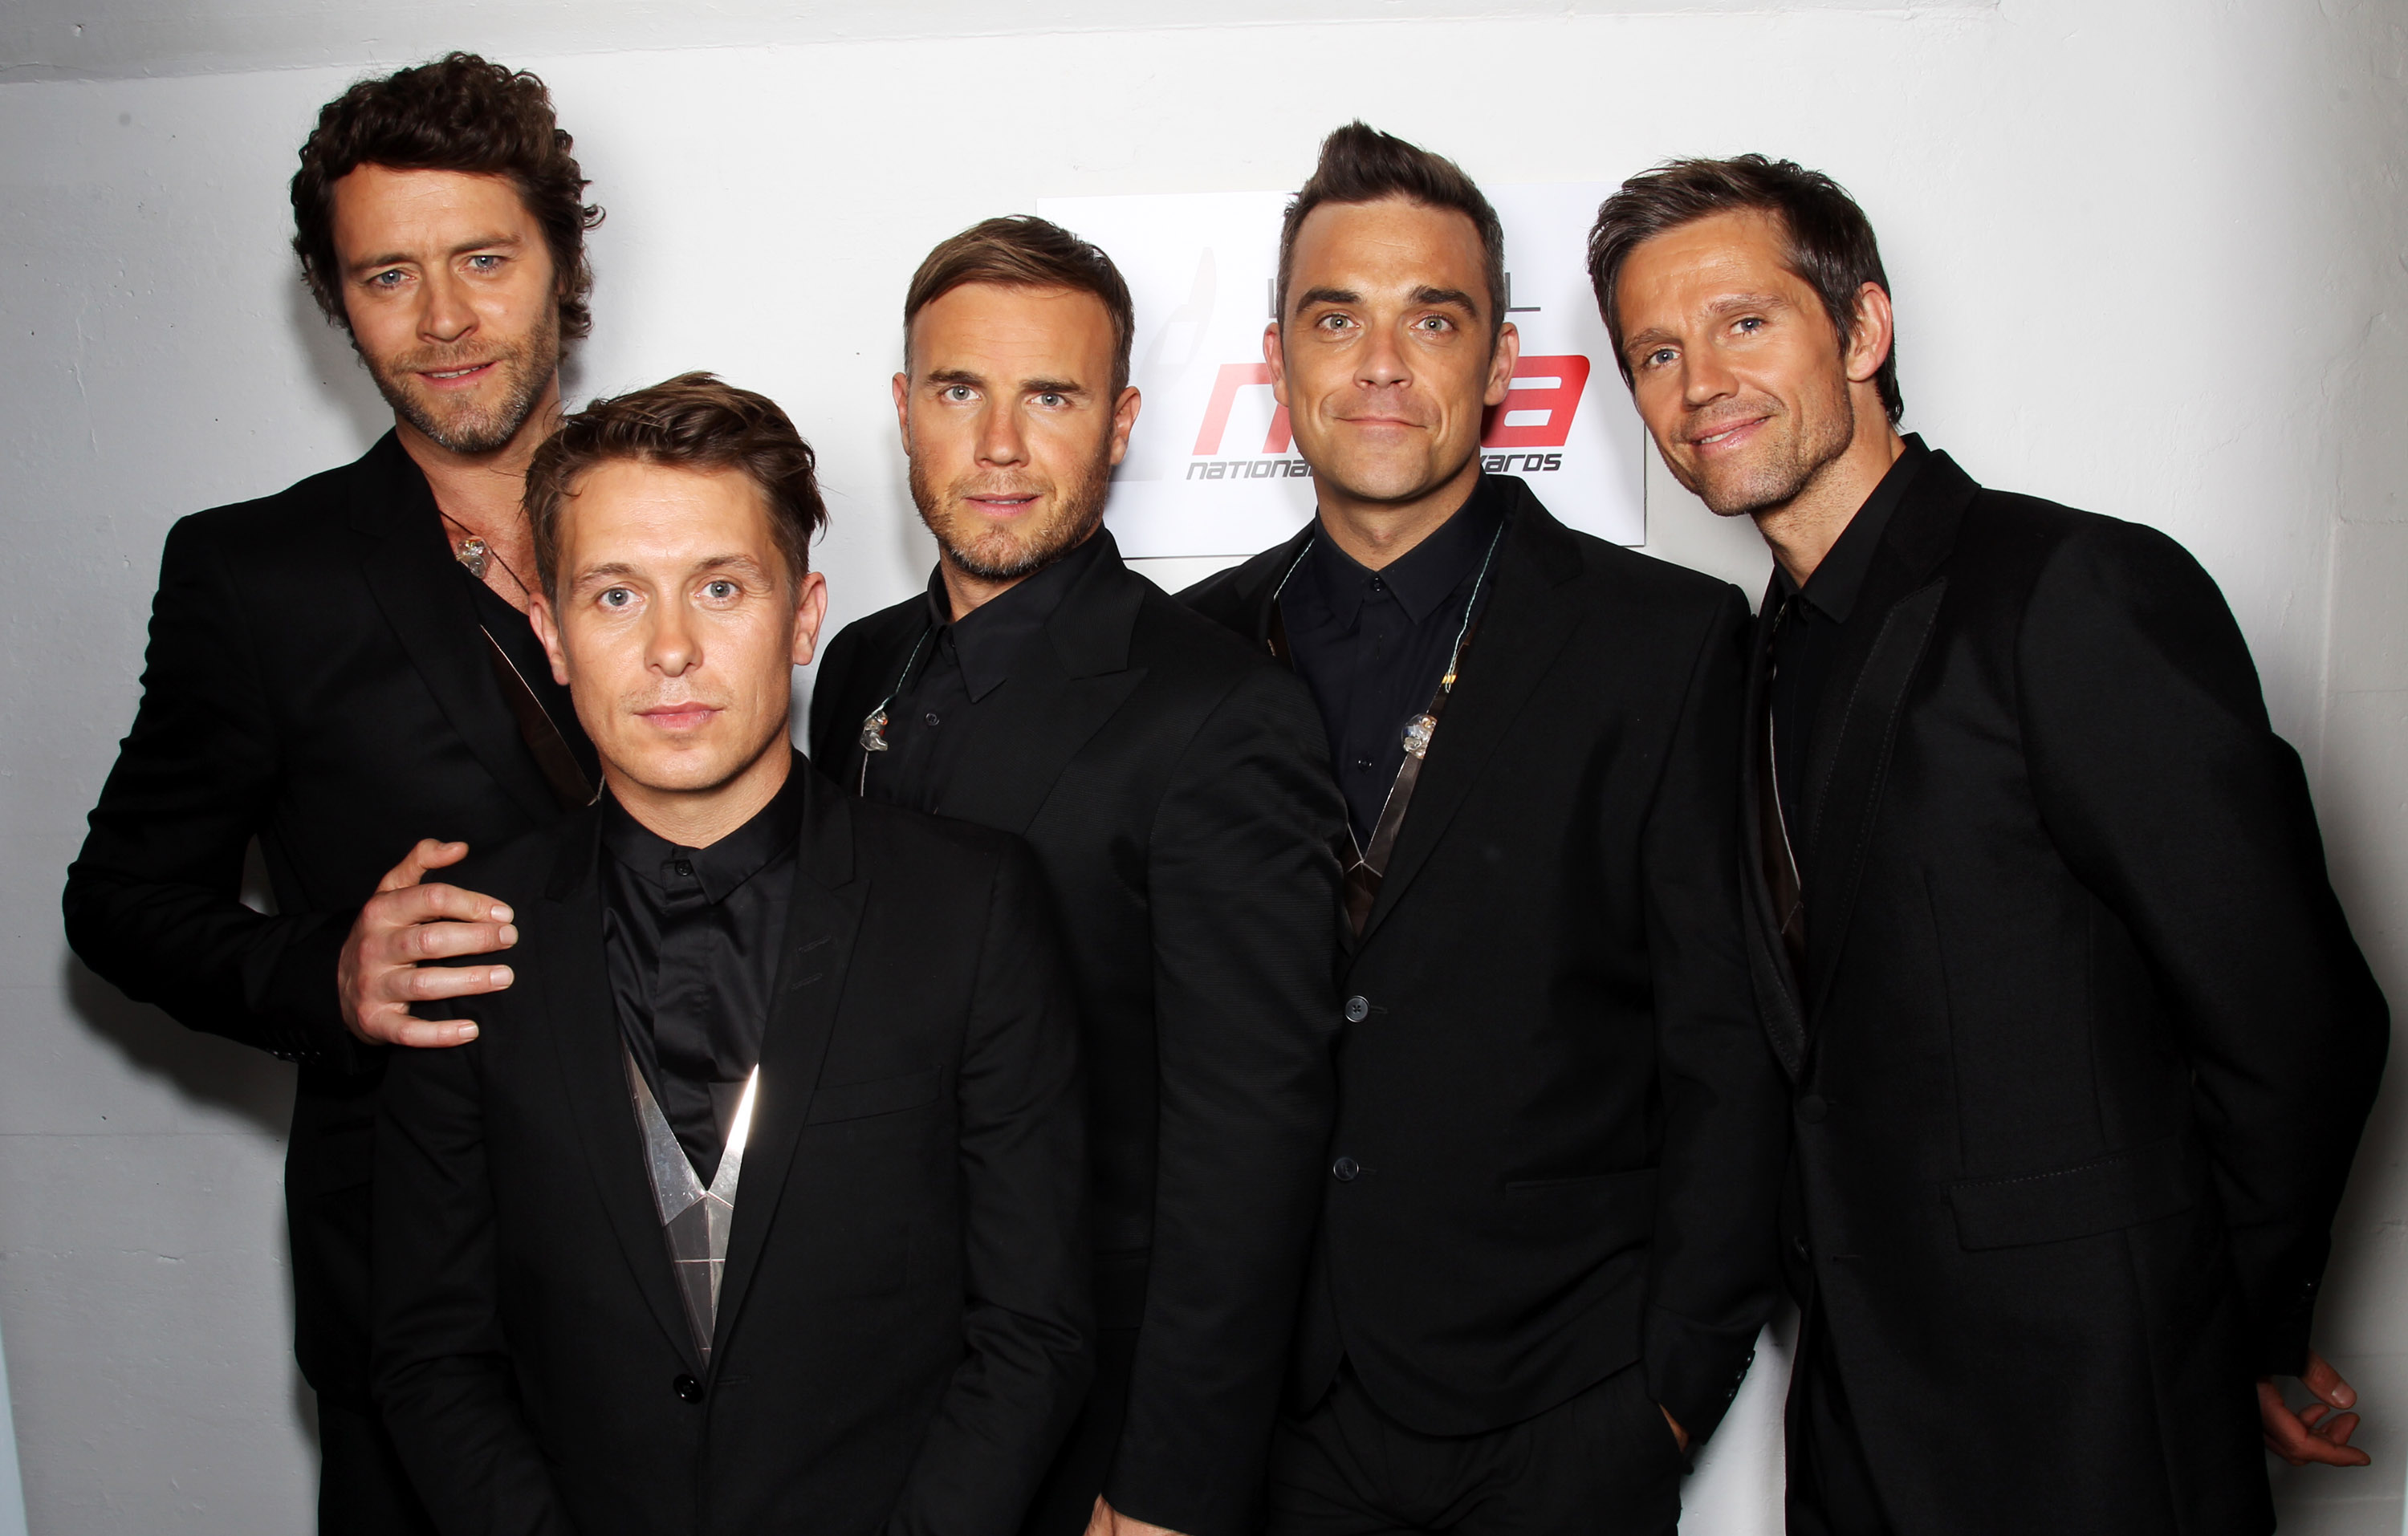 Jason gehörte zu den ursprünglichen fünf Mitgliedern von Take That (ganz rechts)